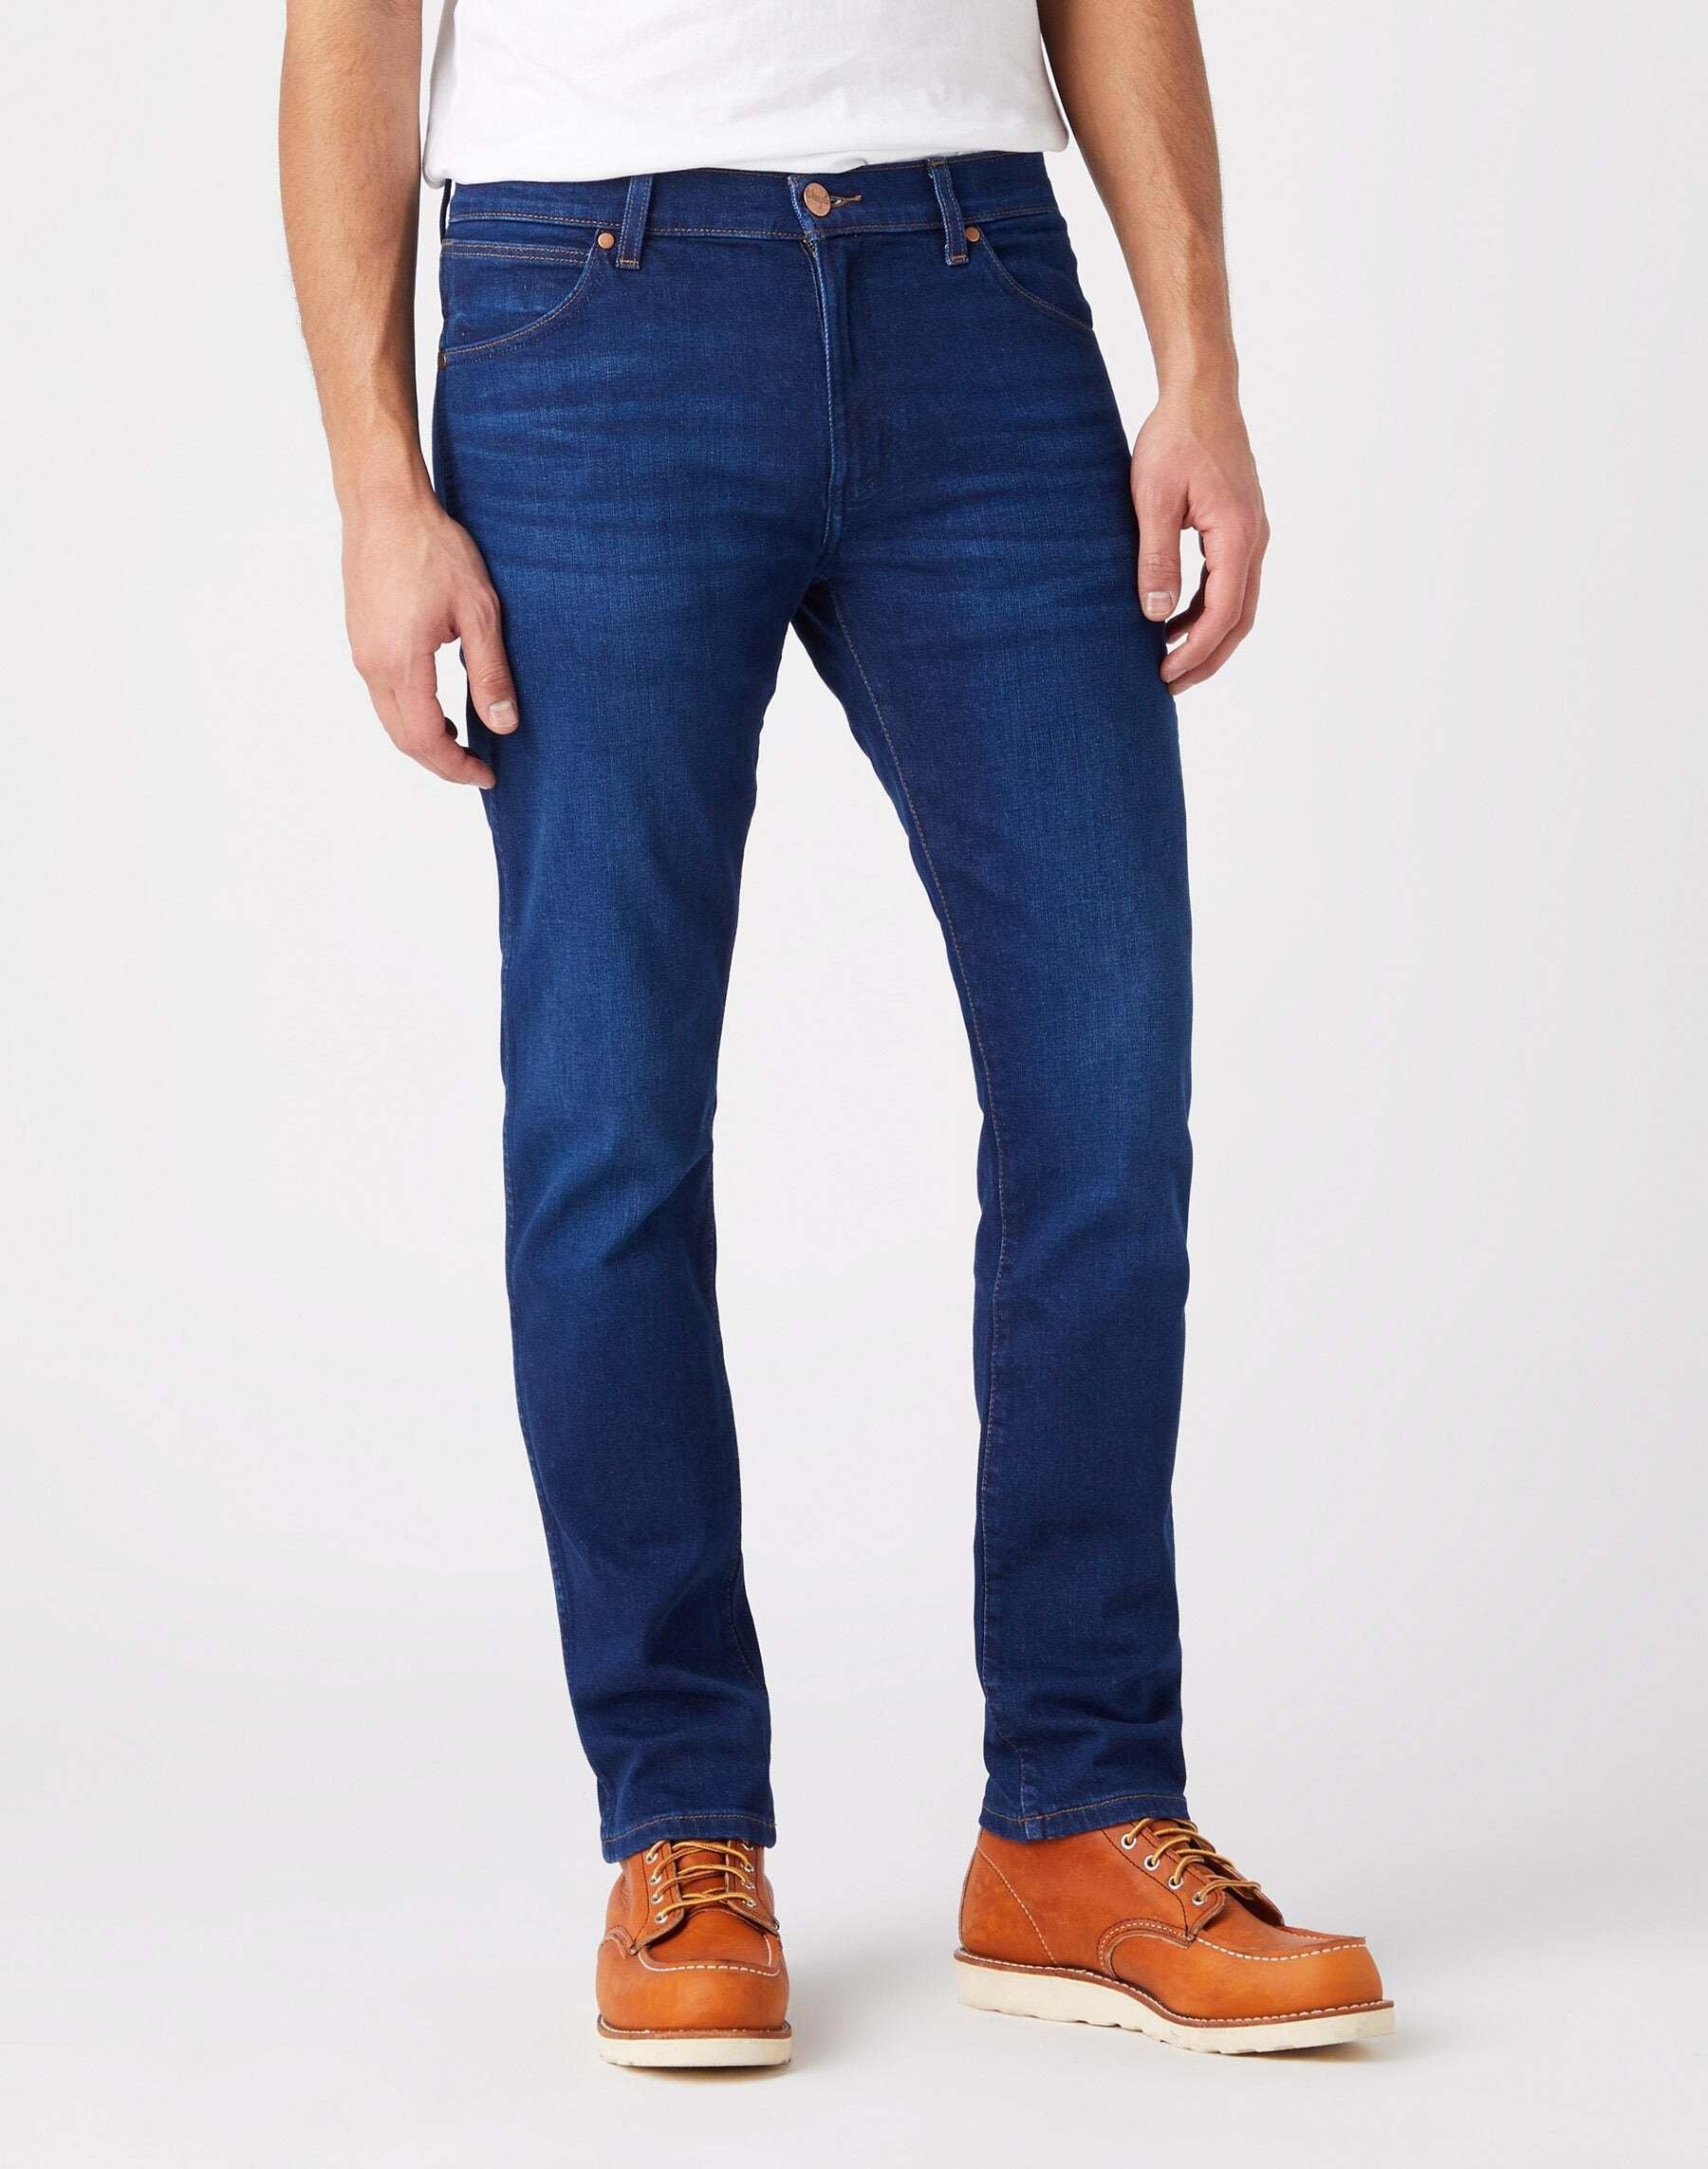 Jeans Slim Fit Larston Herren Blau Denim L30/W30 von Wrangler